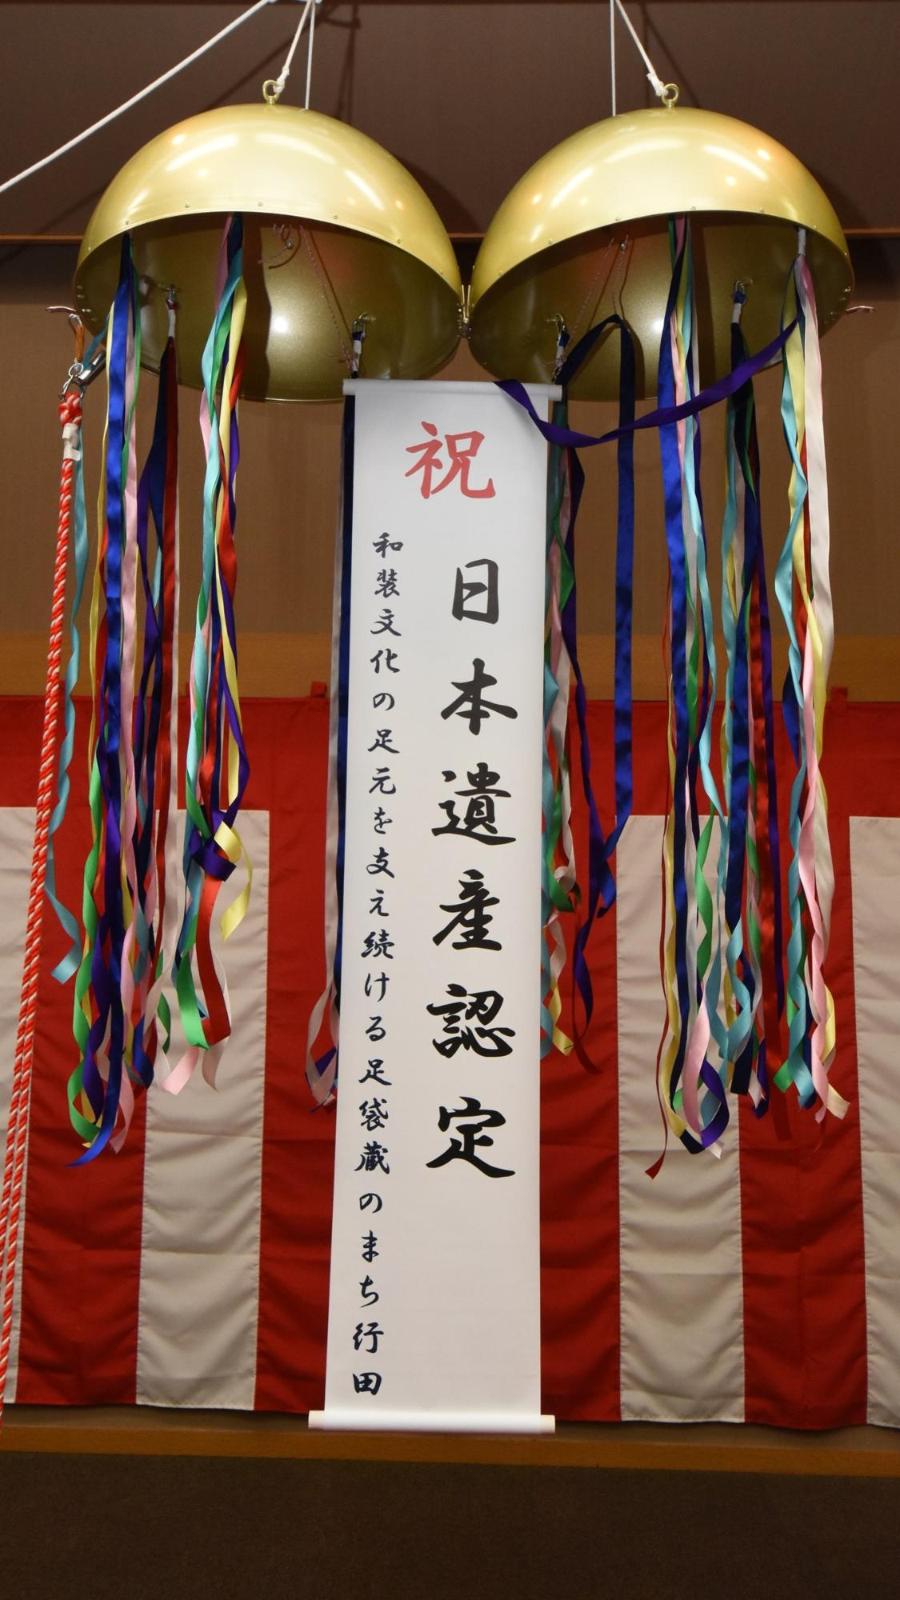 祝日本遺産認定と書かれた垂れ幕の下がったくす玉の写真